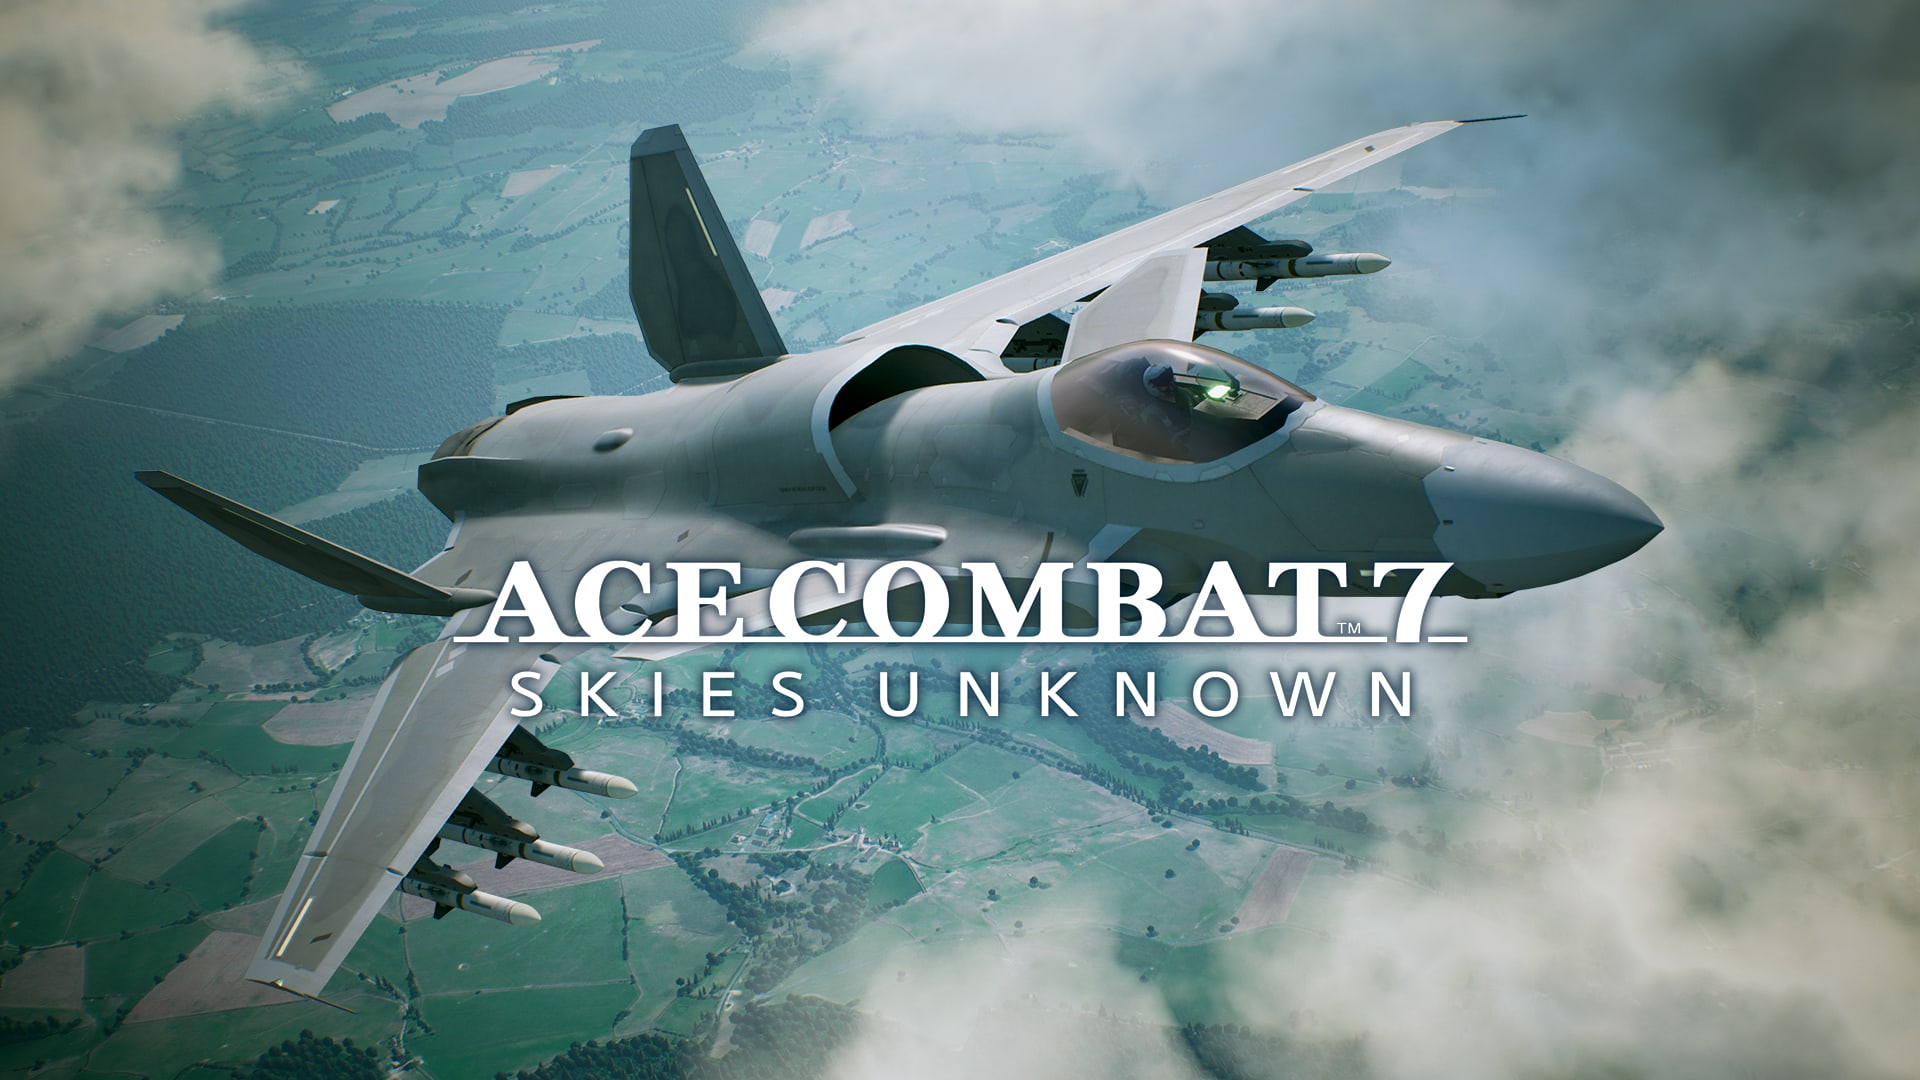 ACE COMBAT™7: SKIES UNKNOWN - Conjunto de ASF-X Shinden II